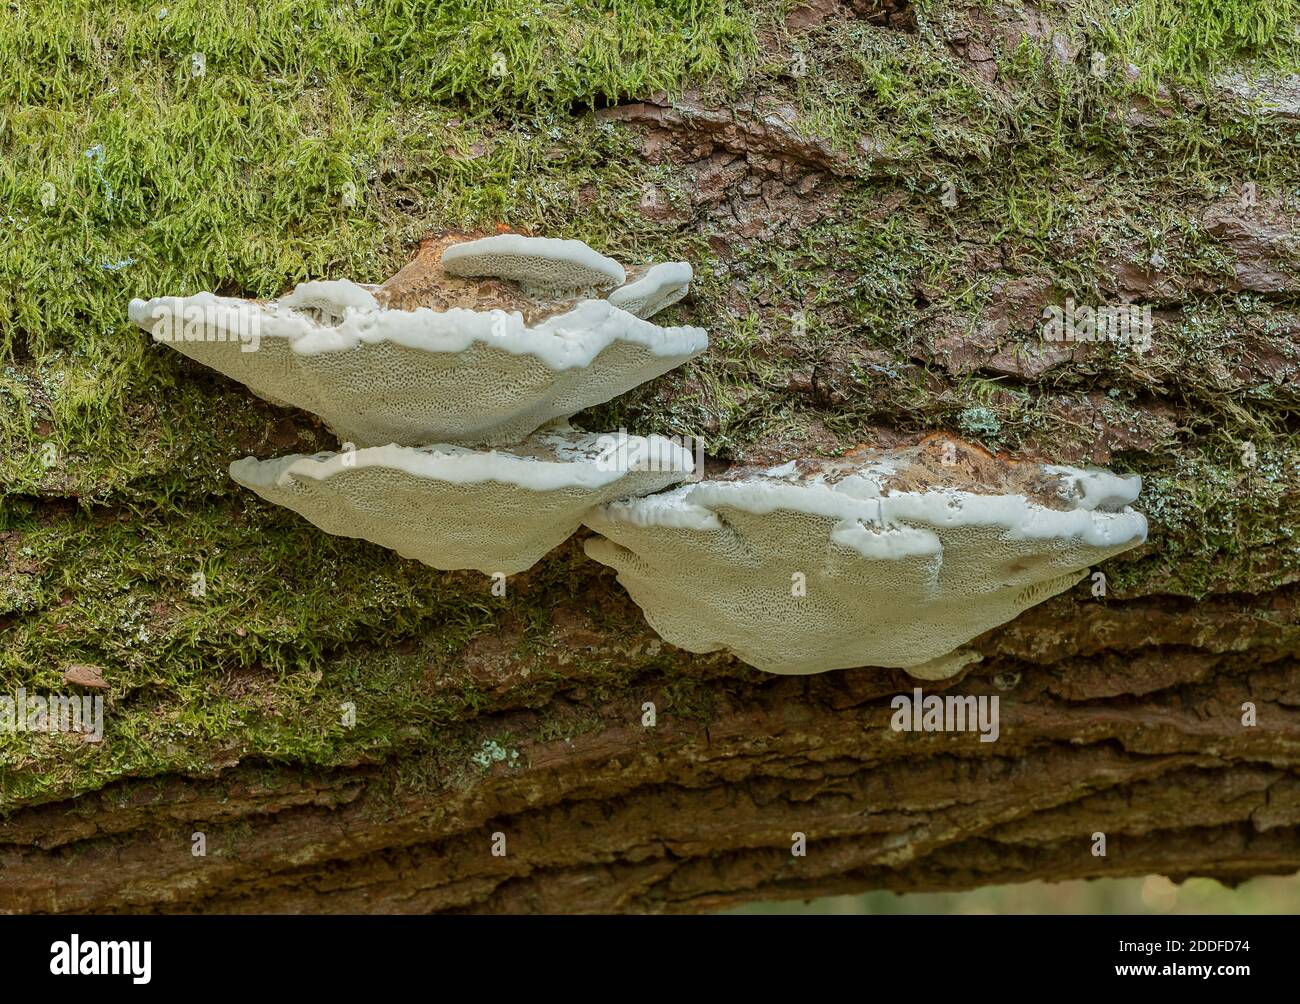 A bracket fungus, Blushing bracket, Daedalopsis confragosa, on fallen willow trunk. Stock Photo